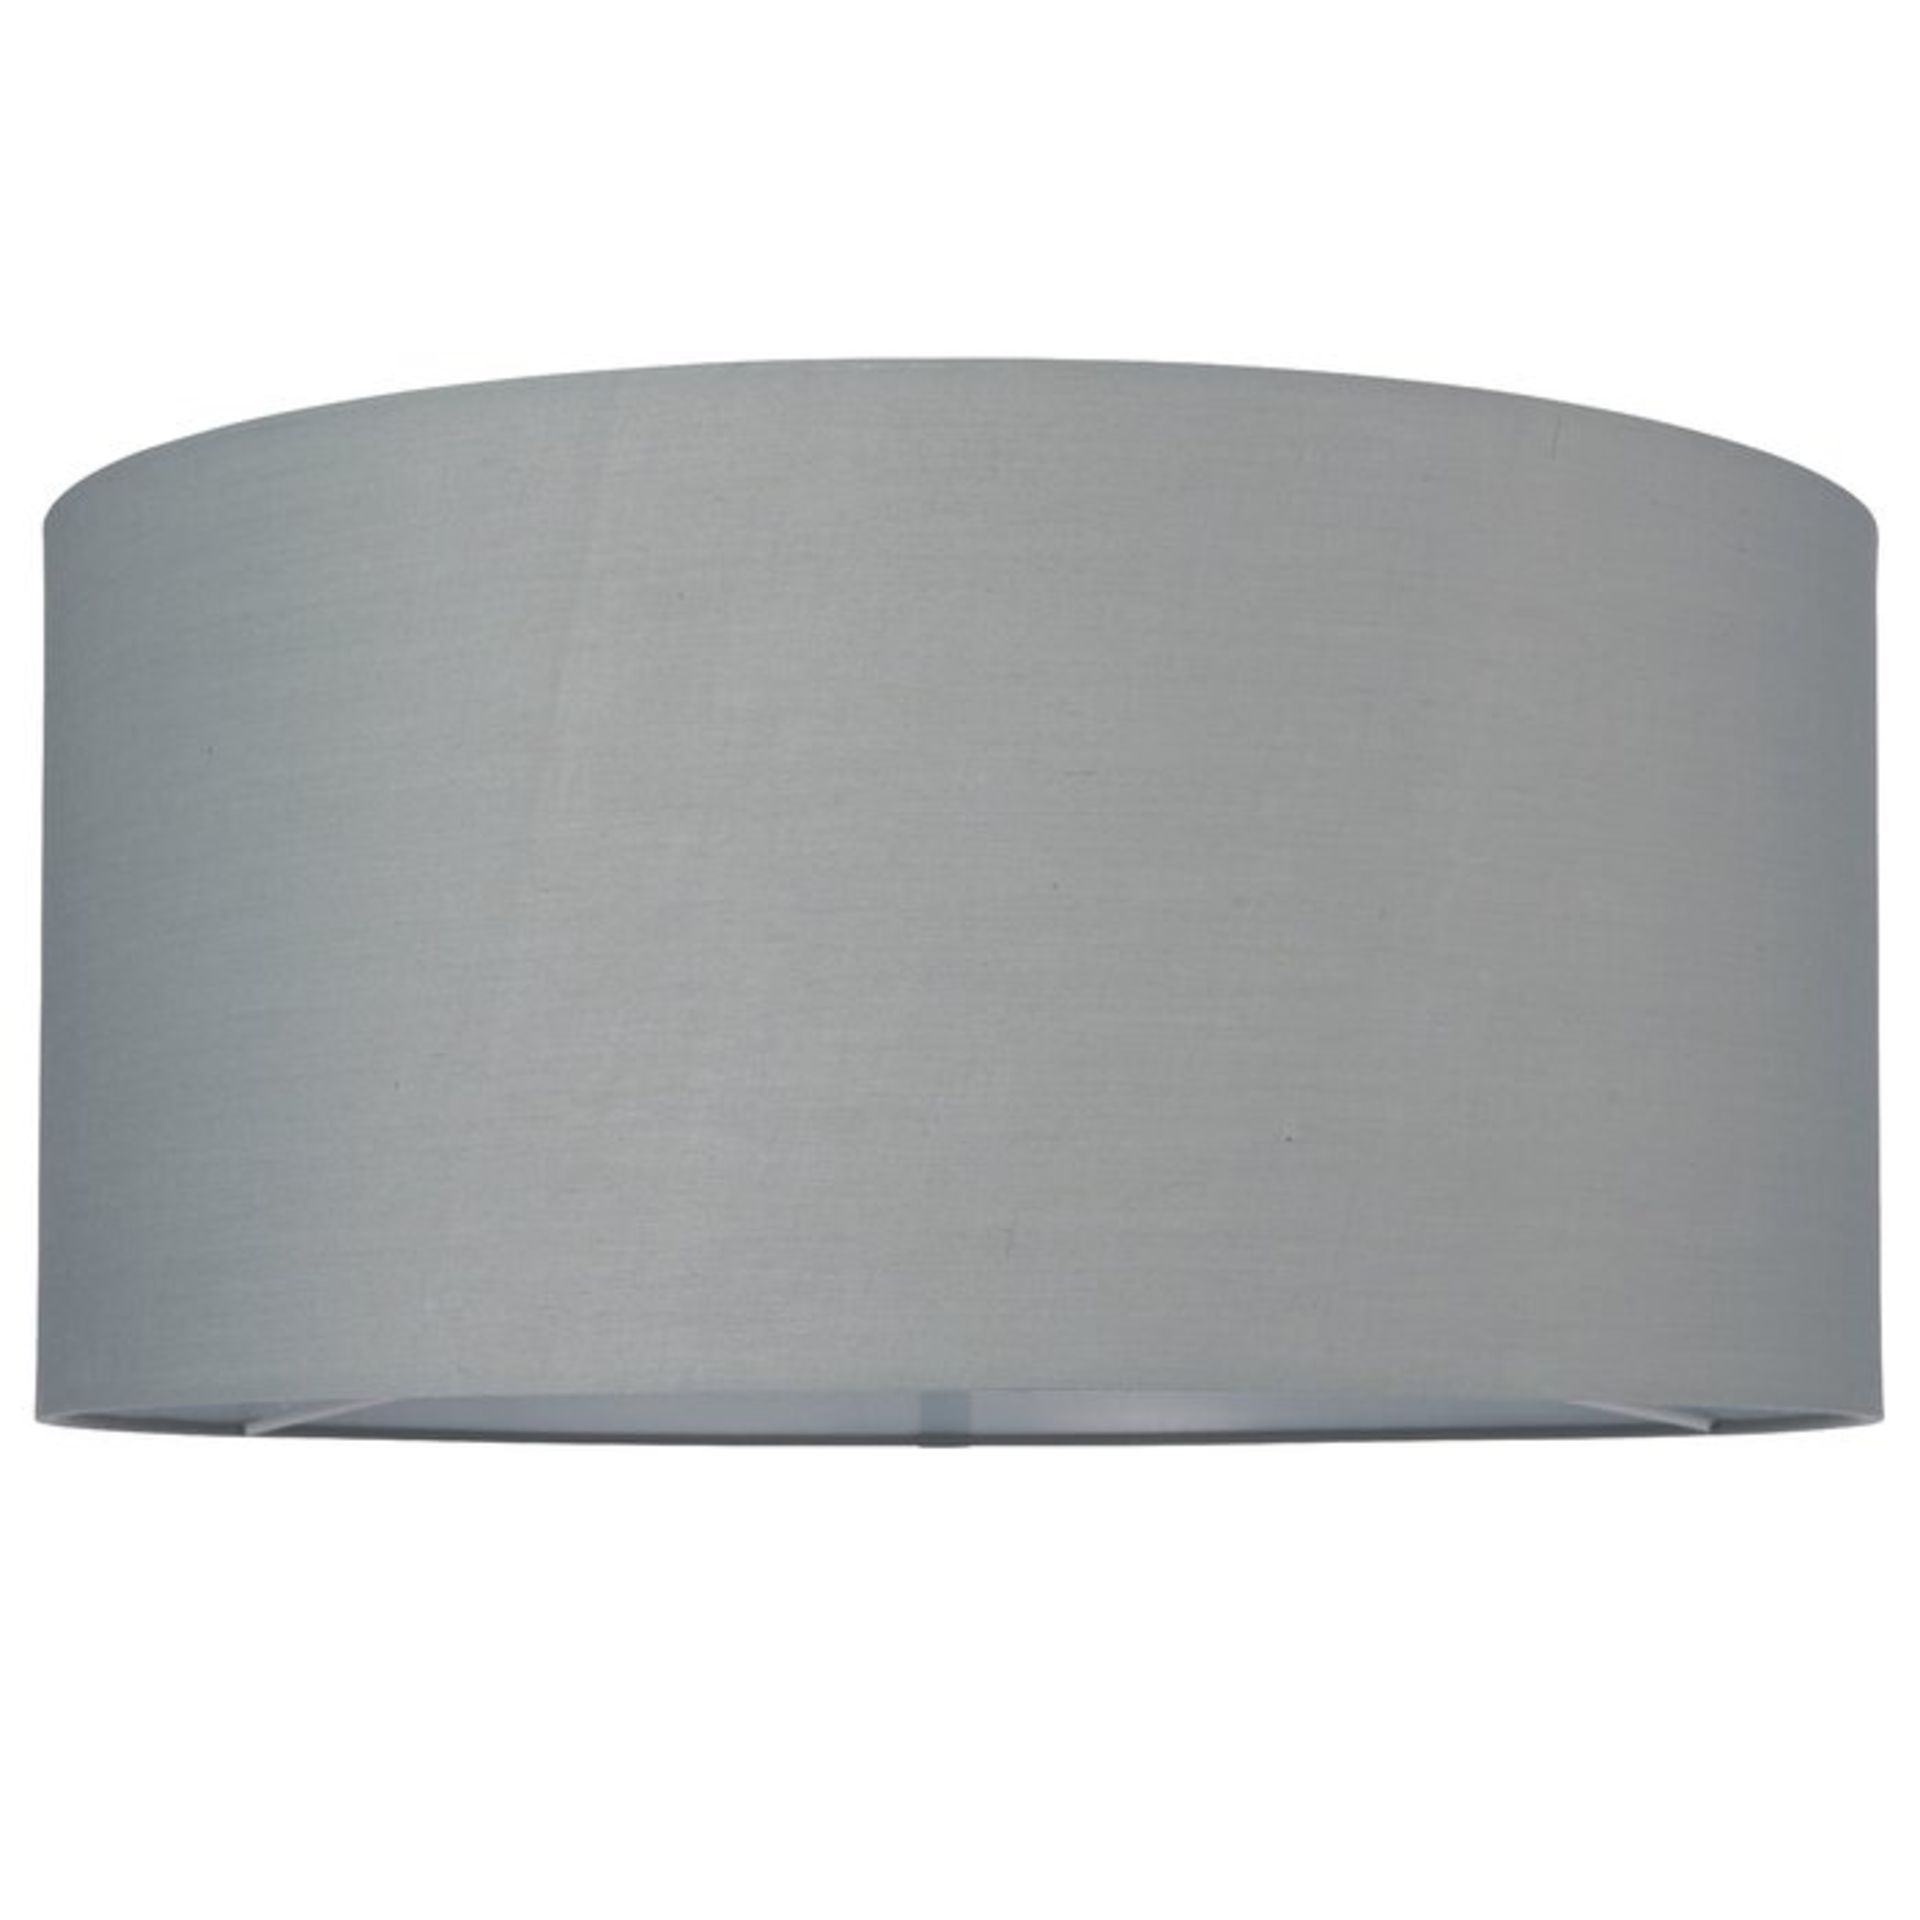 50cm Cotton Drum Lamp Shade - RRP £61.99